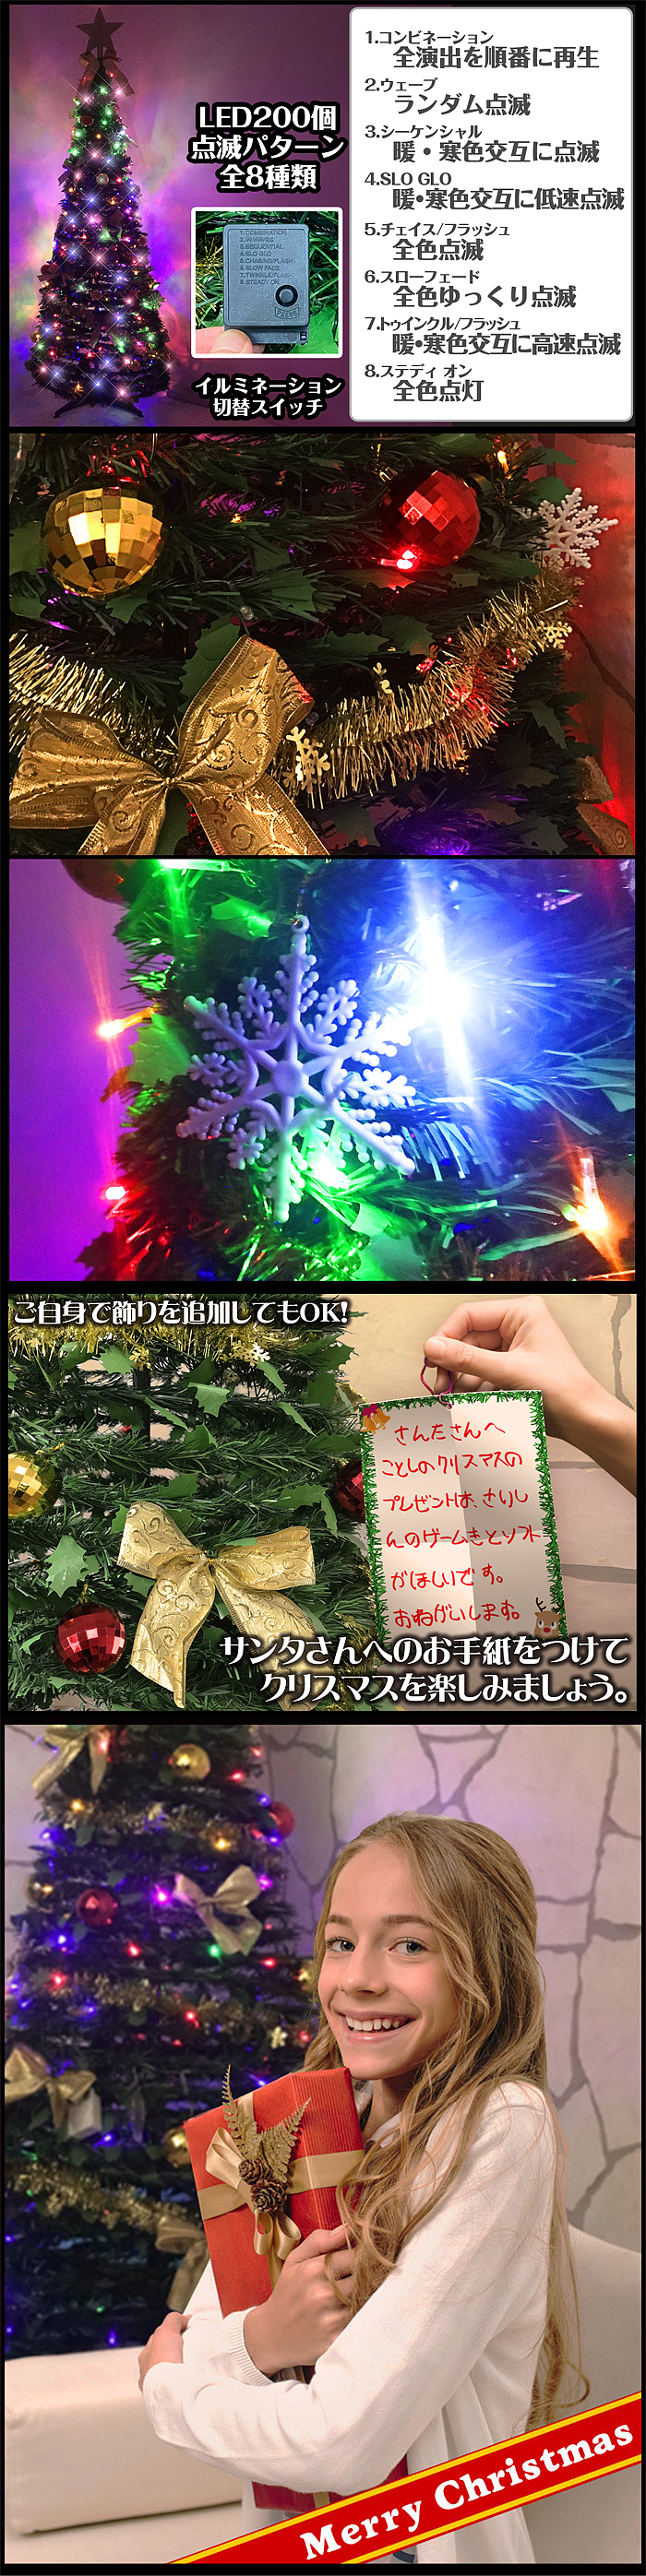 組み立て簡単クリスマスツリー【ワン・ツー・ツリー】LED付属